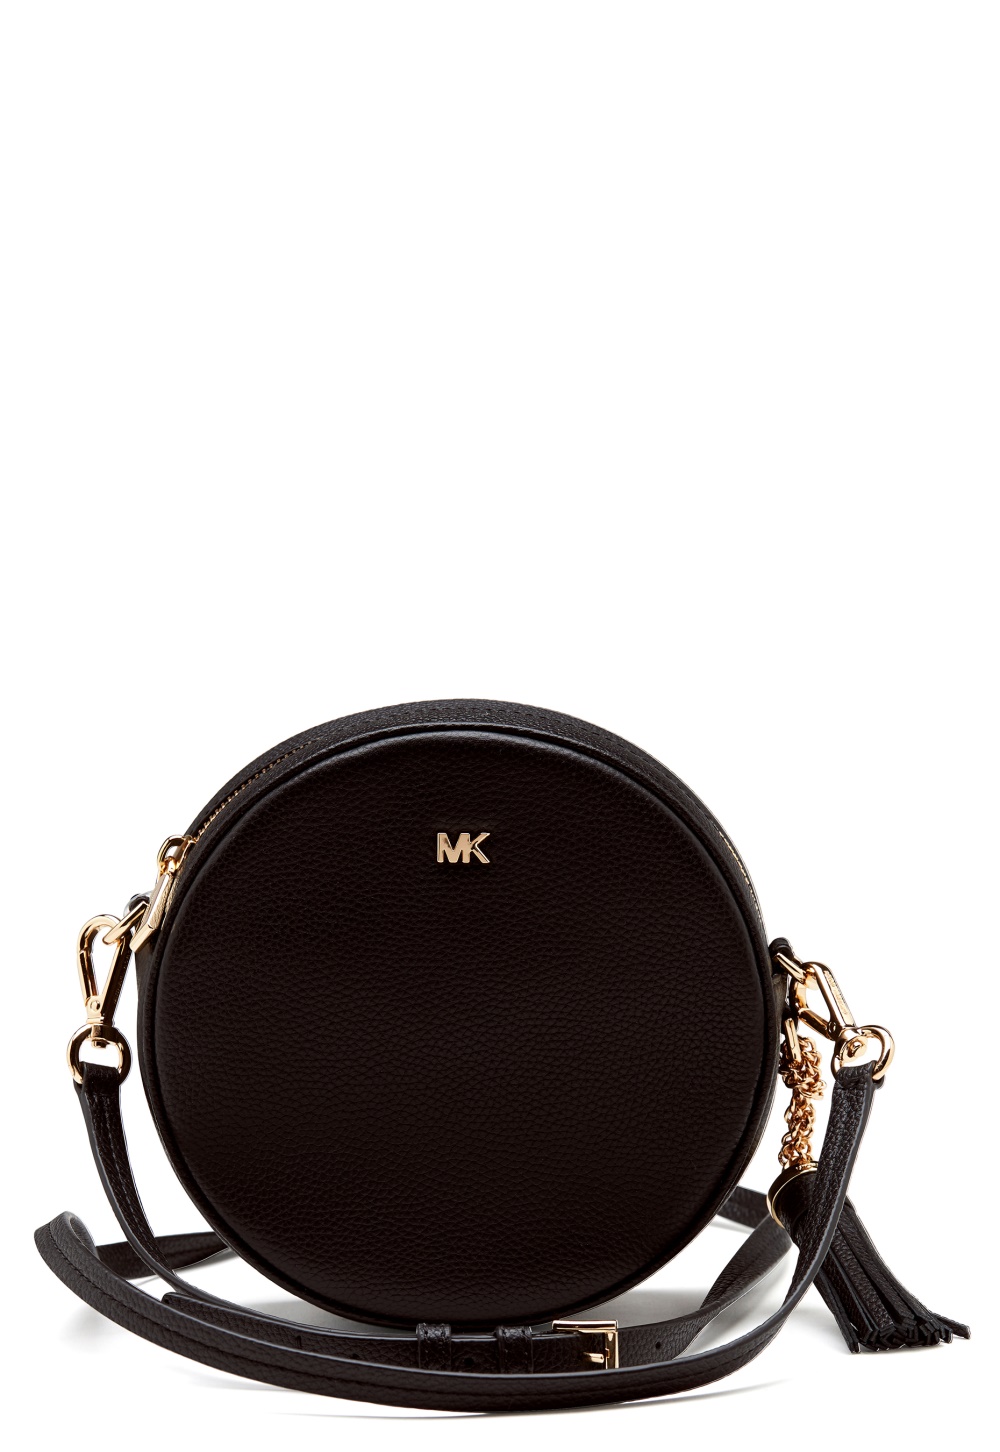 mk round bag